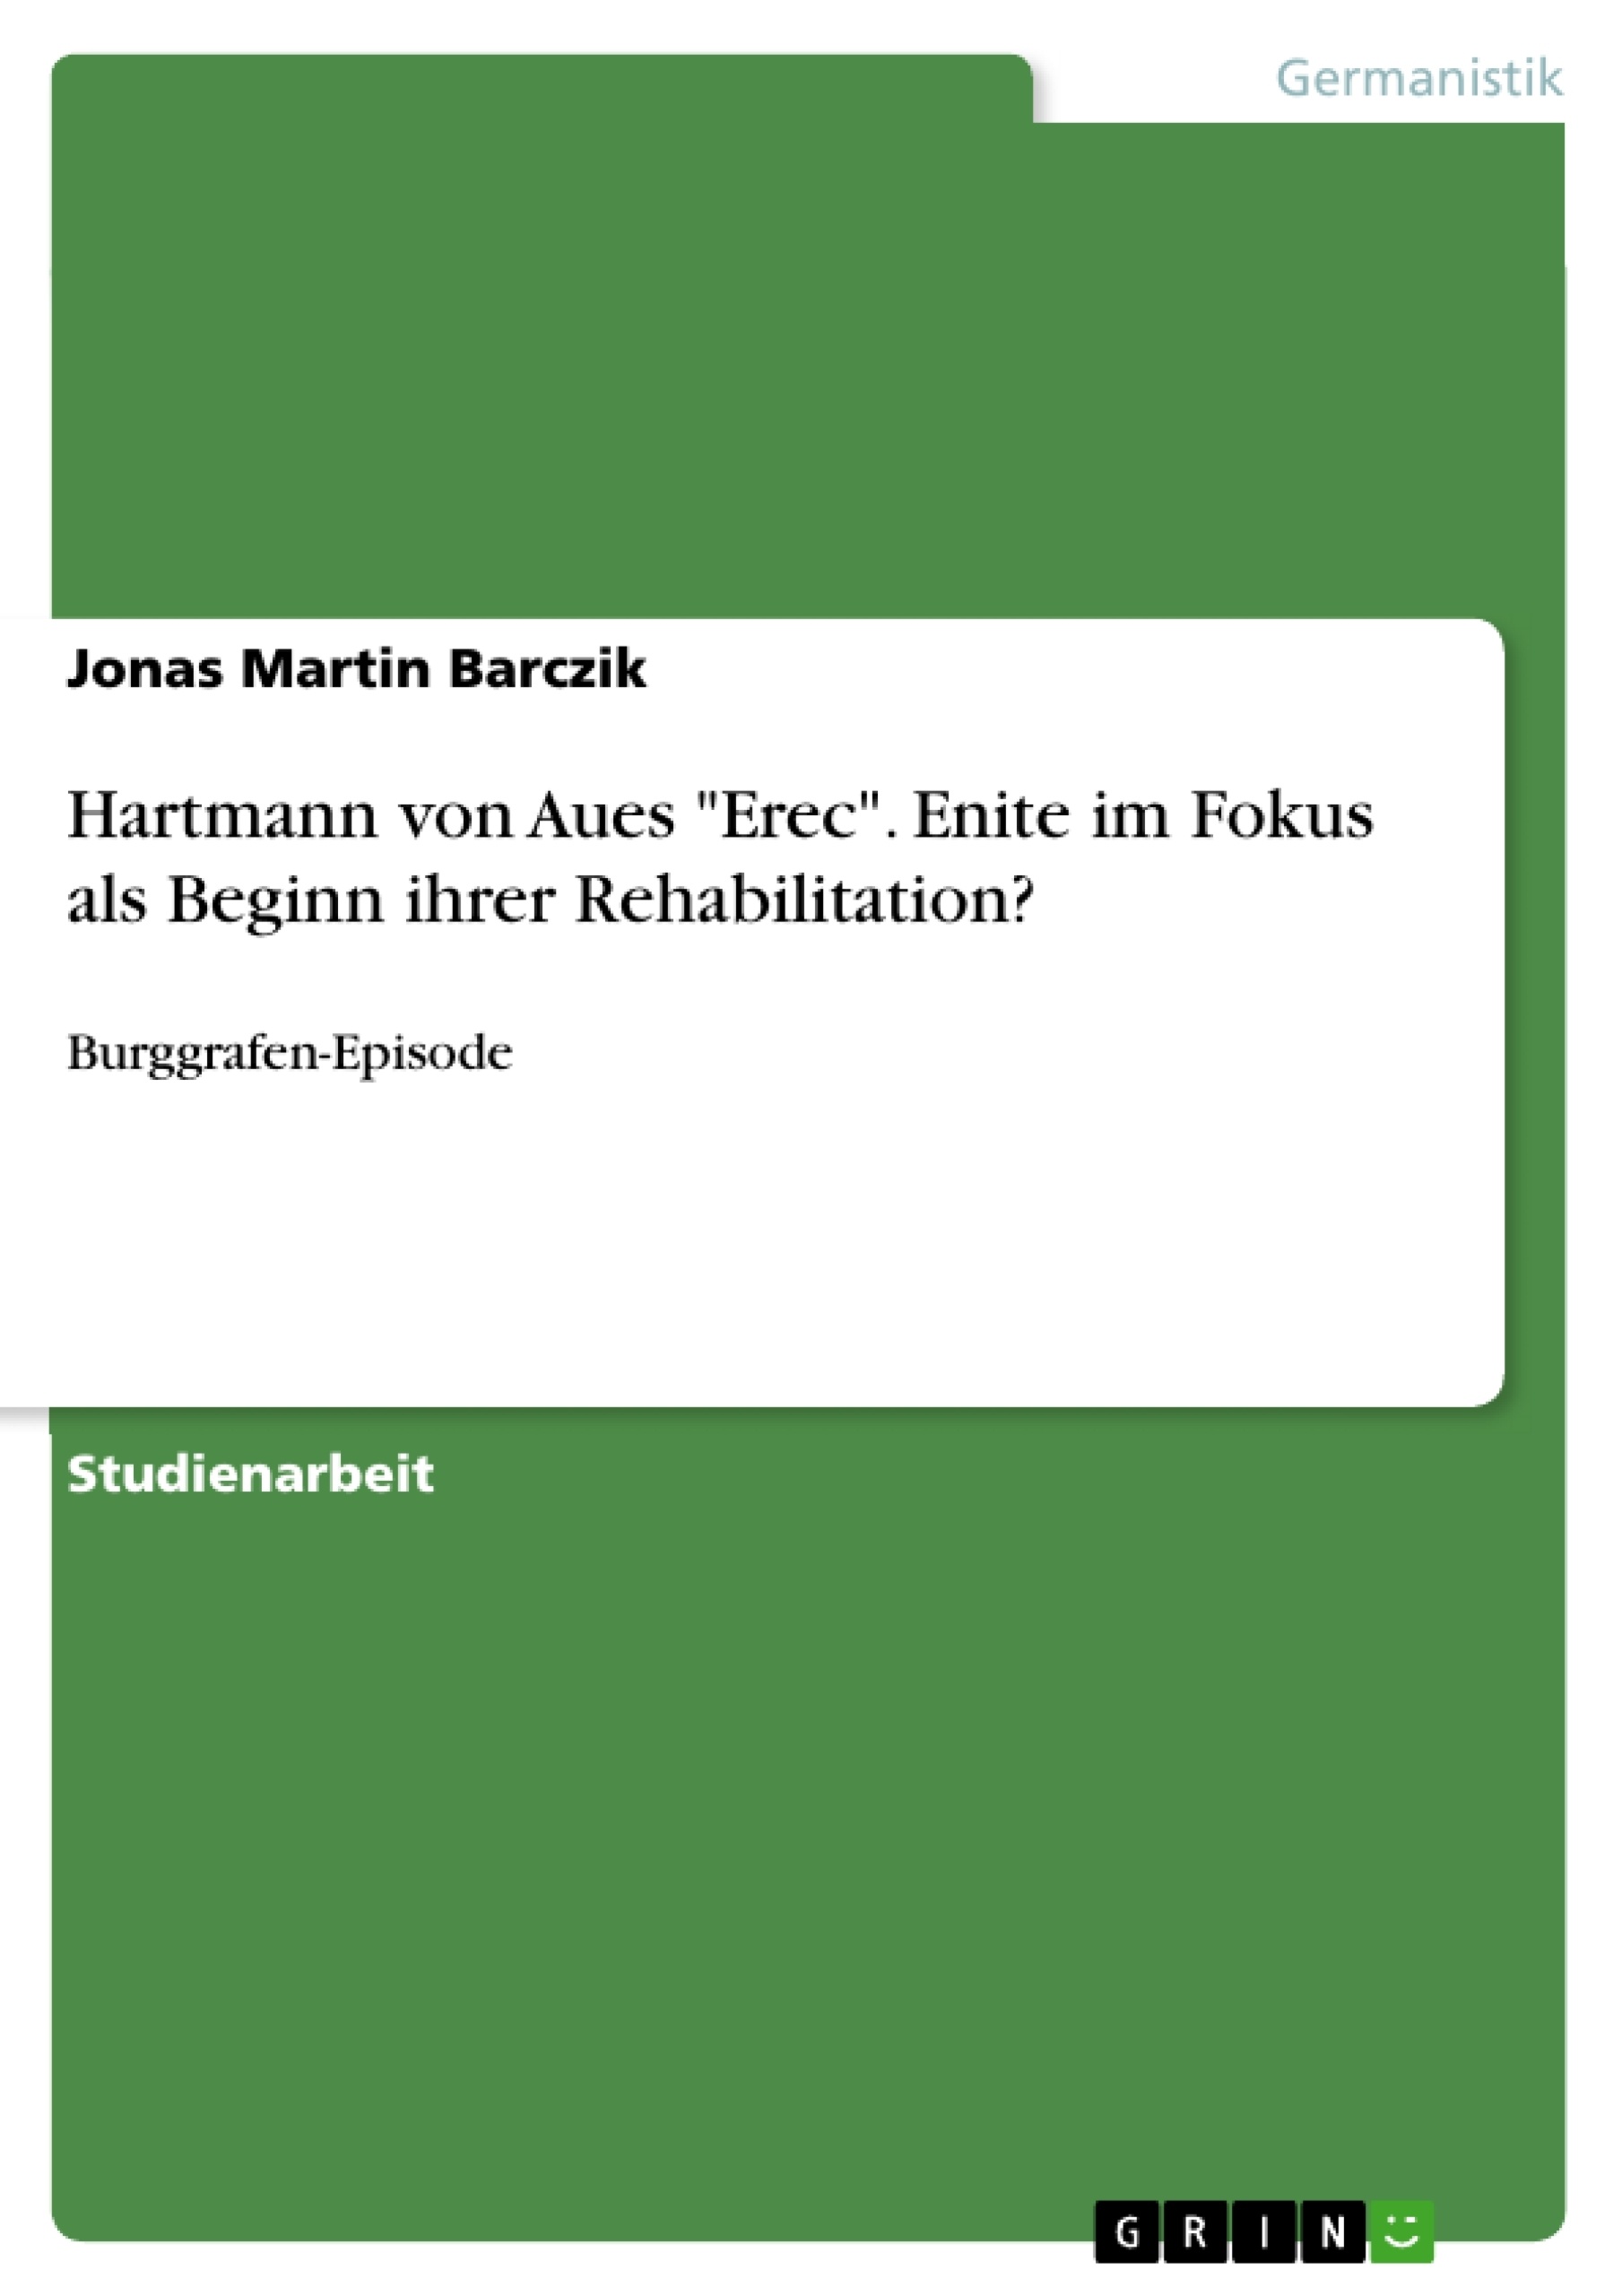 Título: Hartmann von Aues "Erec". Enite im Fokus als Beginn ihrer Rehabilitation?